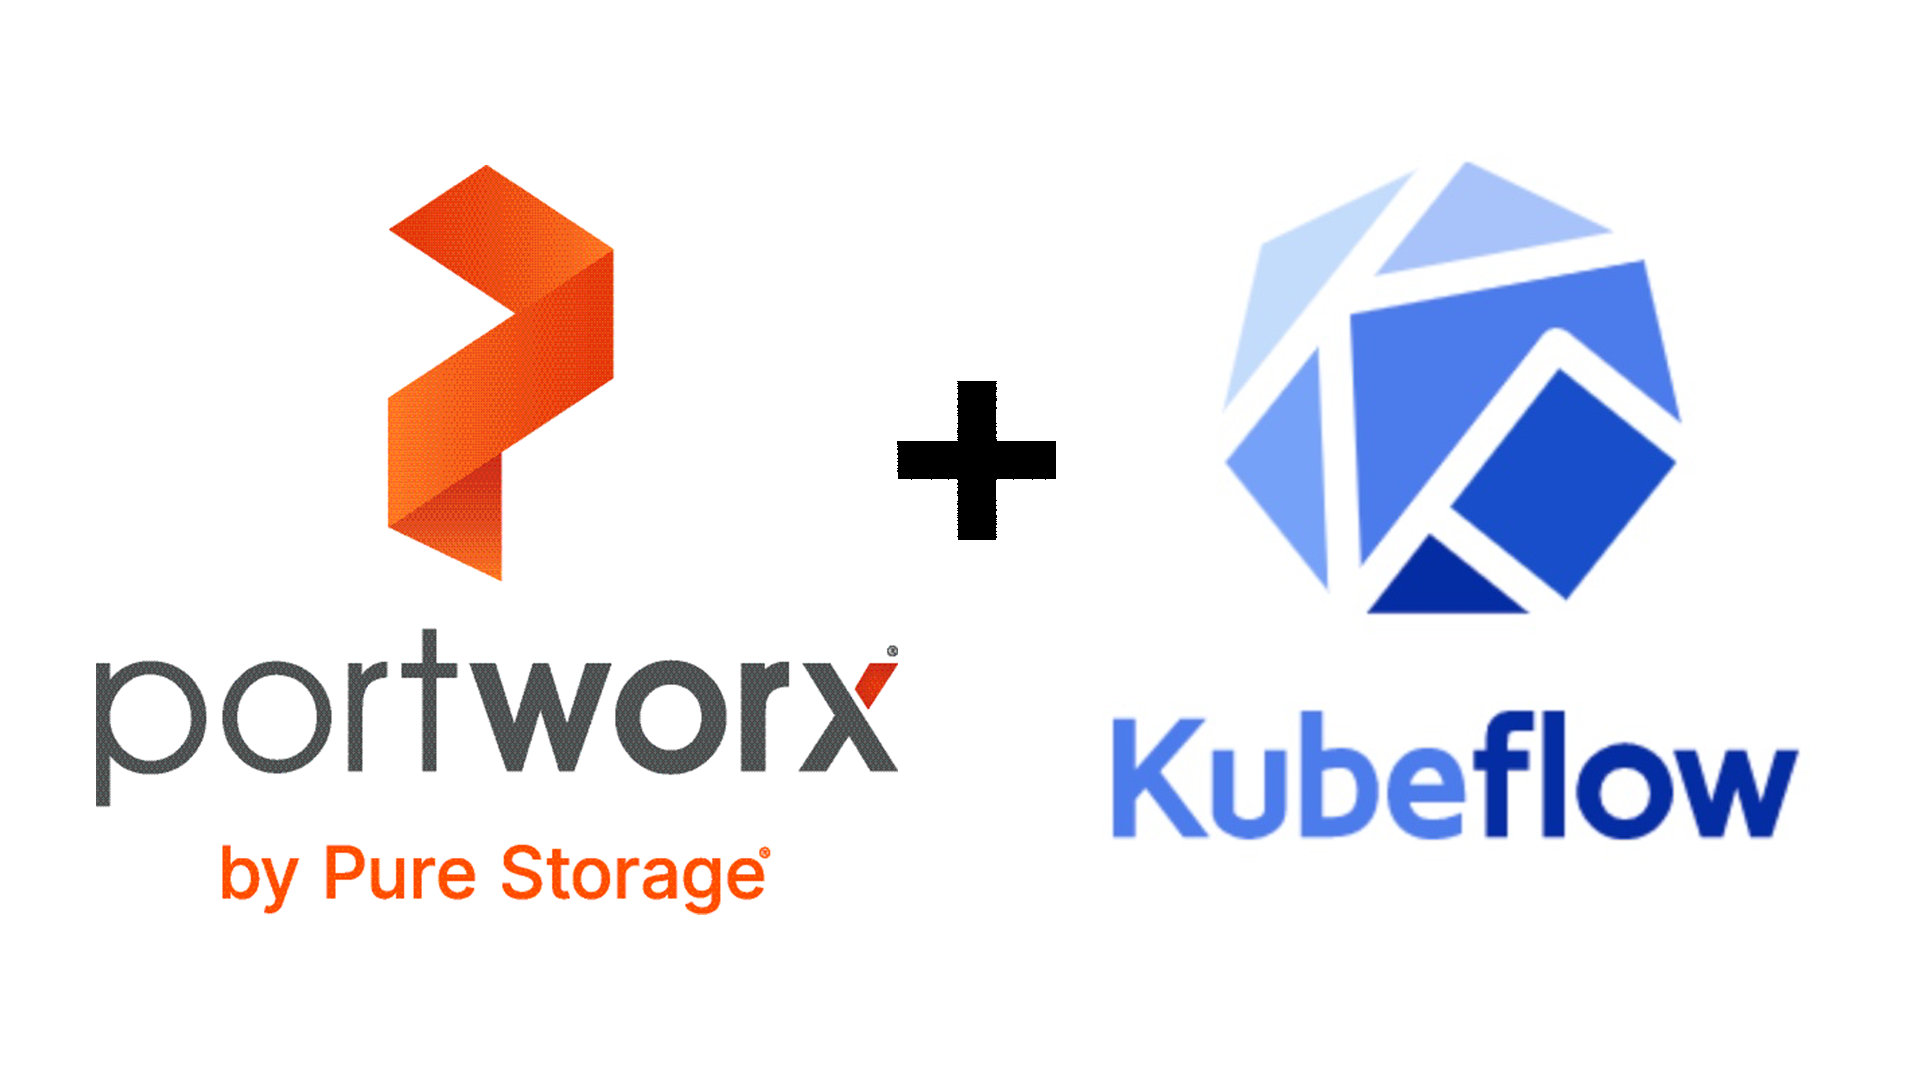 Portworx plus Kubeflow logos